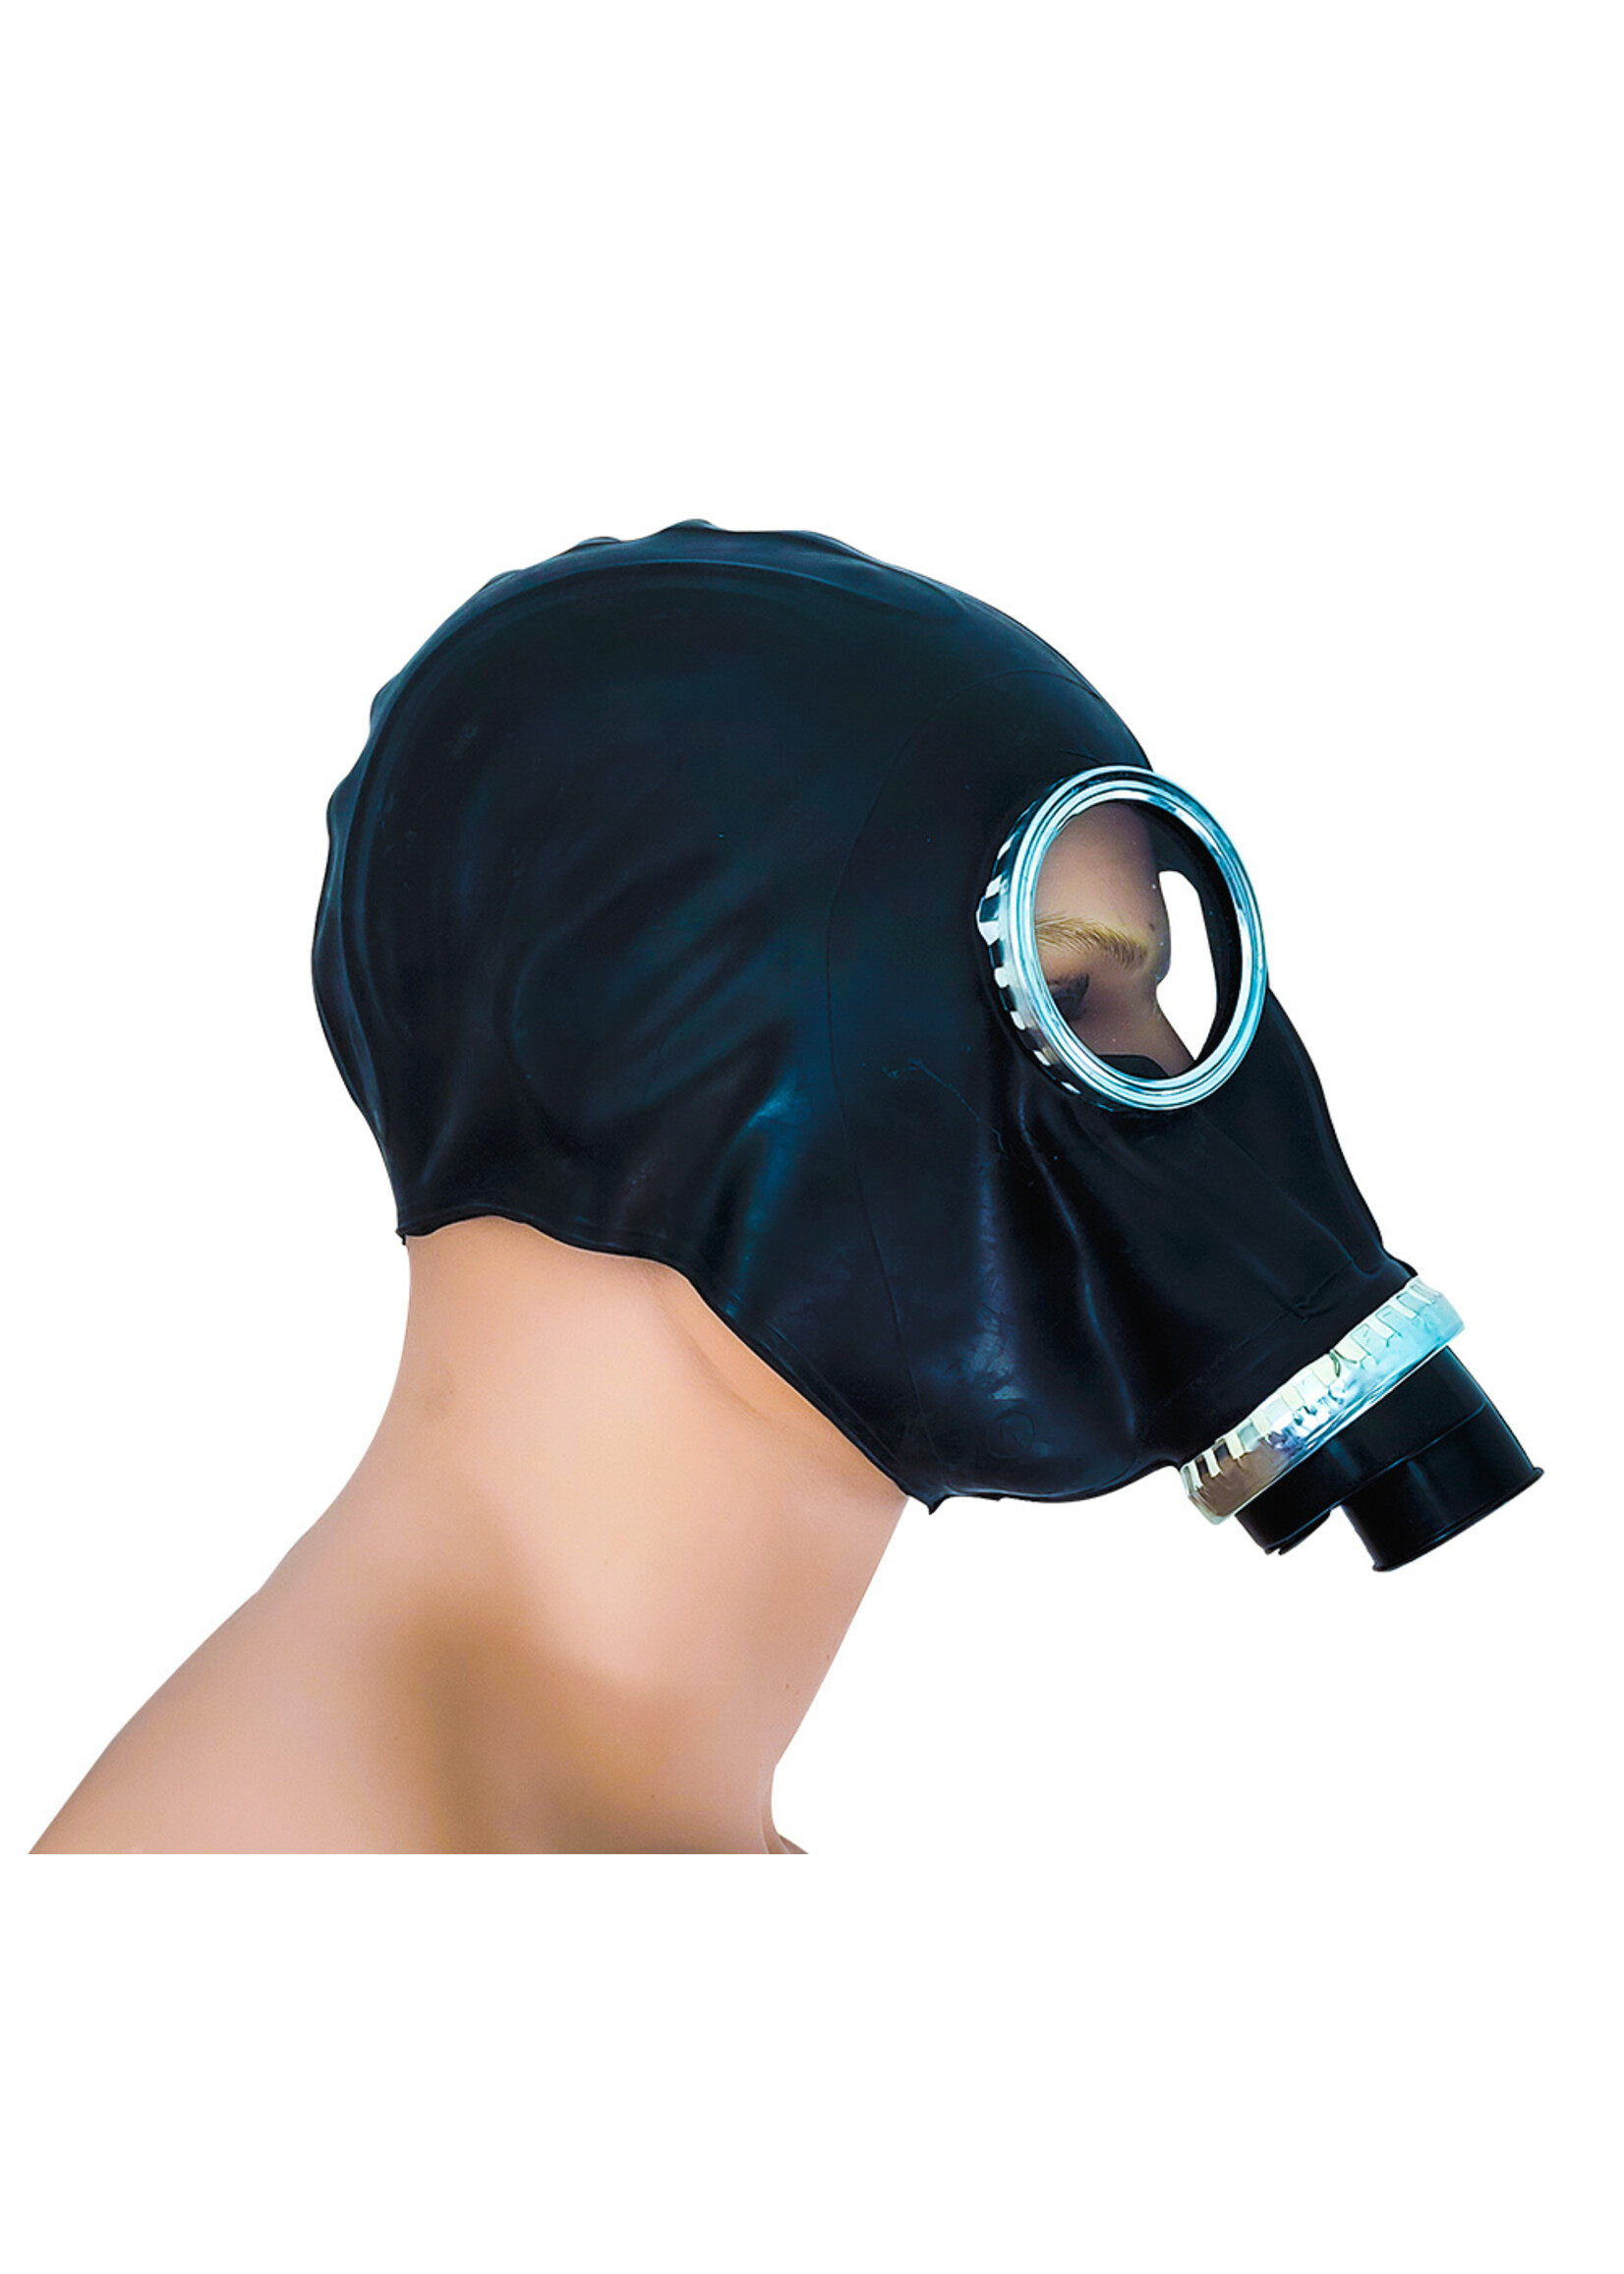 MOI Full rubber gas mask